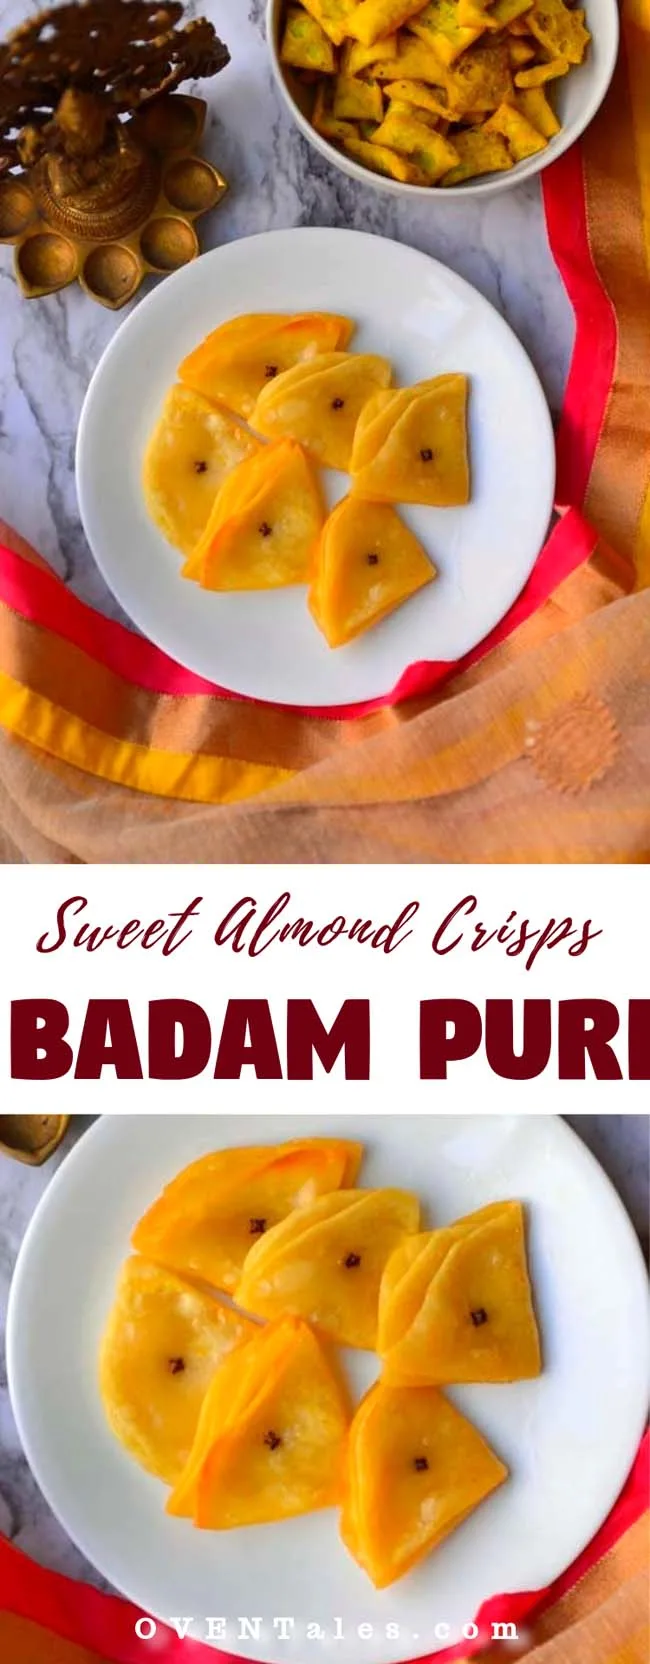 Badam Puri or Badami Puri or Almond Poori